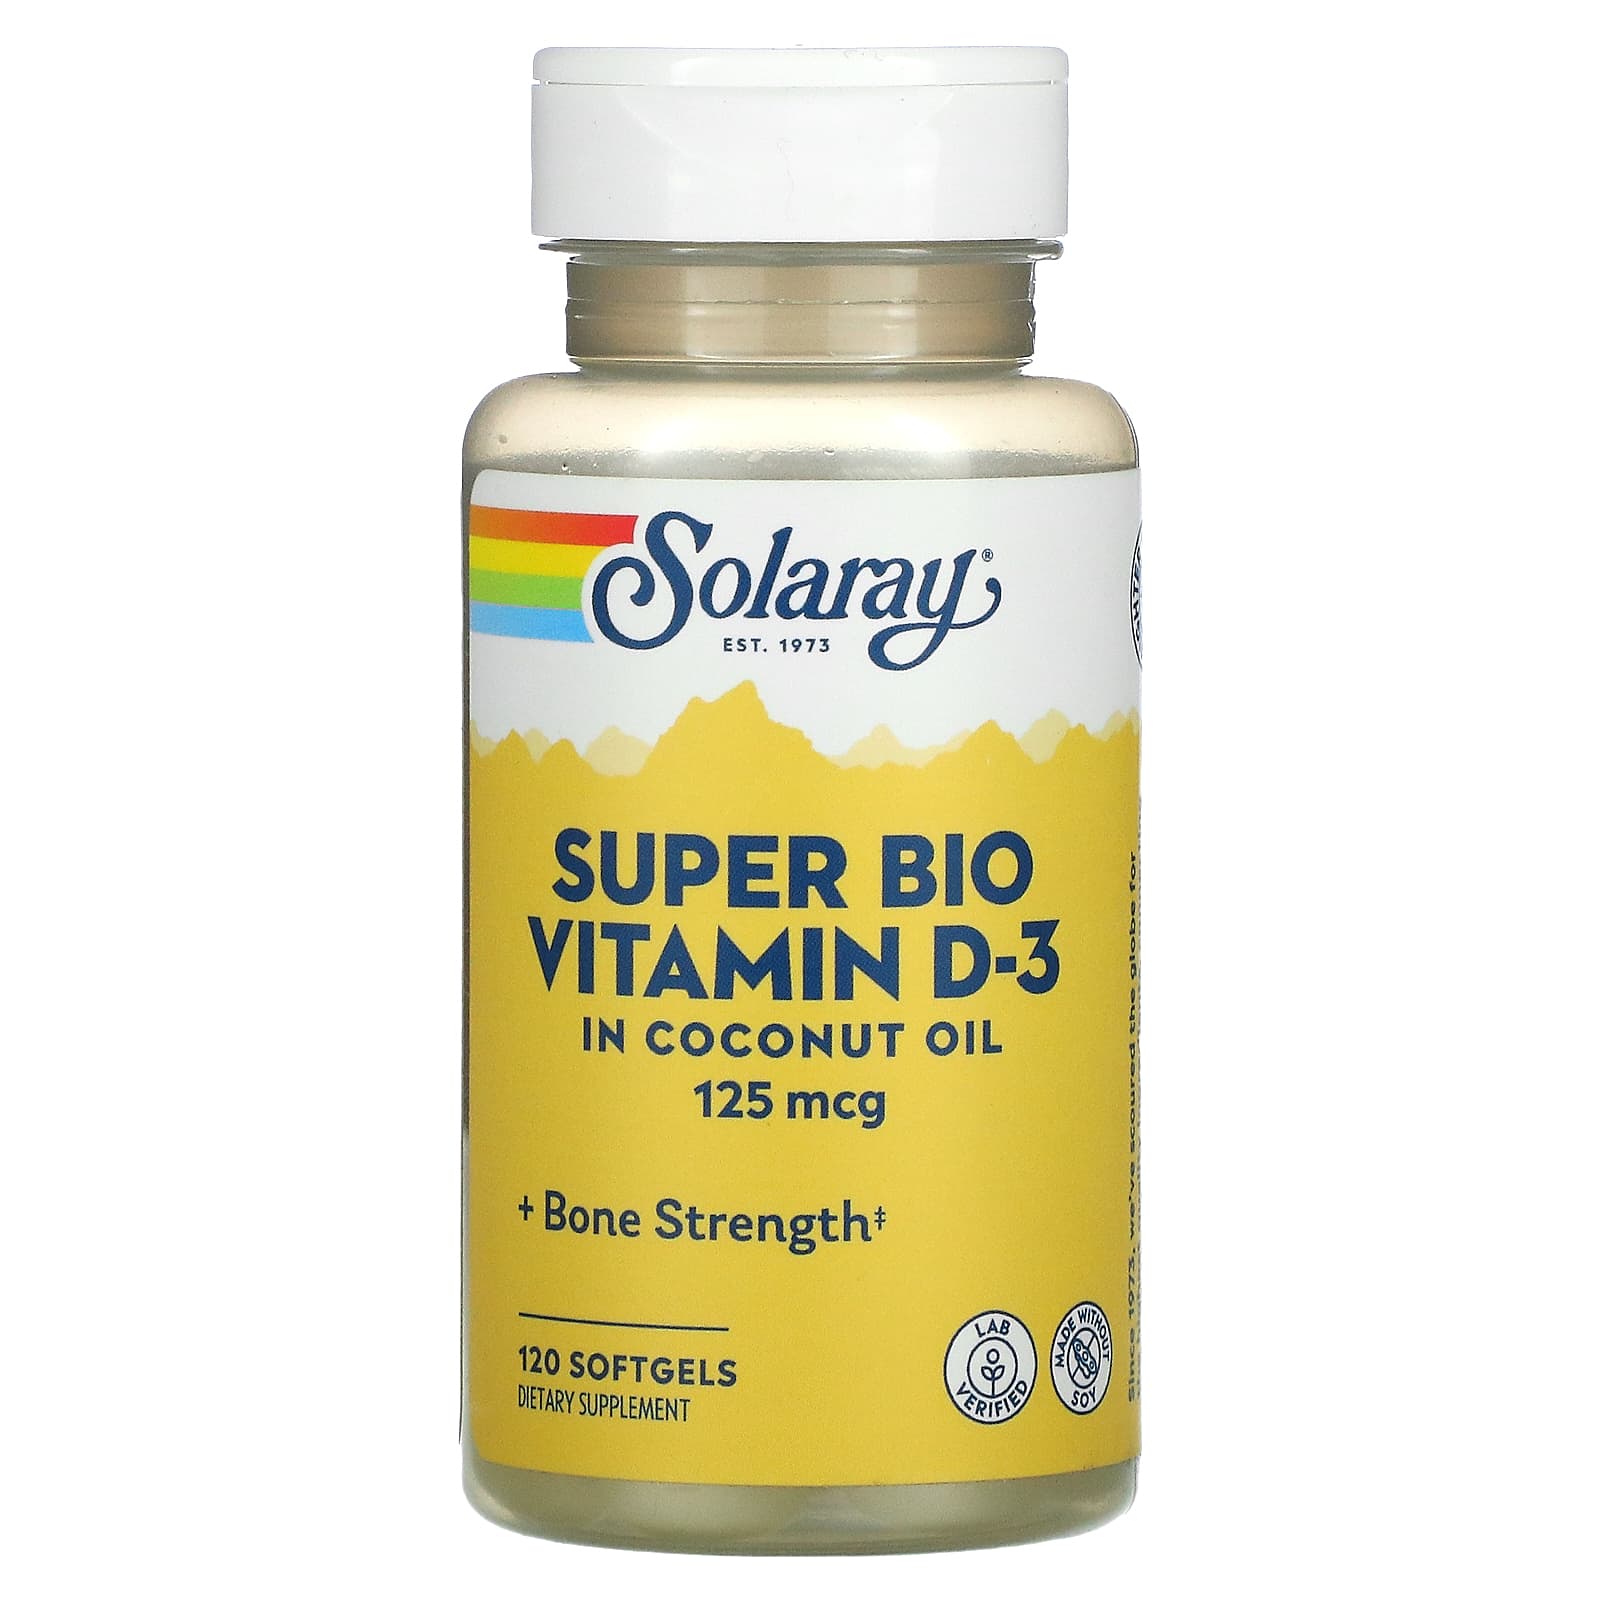 Citaat Verbeteren Werkelijk Solaray, Super Bio Vitamin D-3, 125 mcg, 120 Softgels